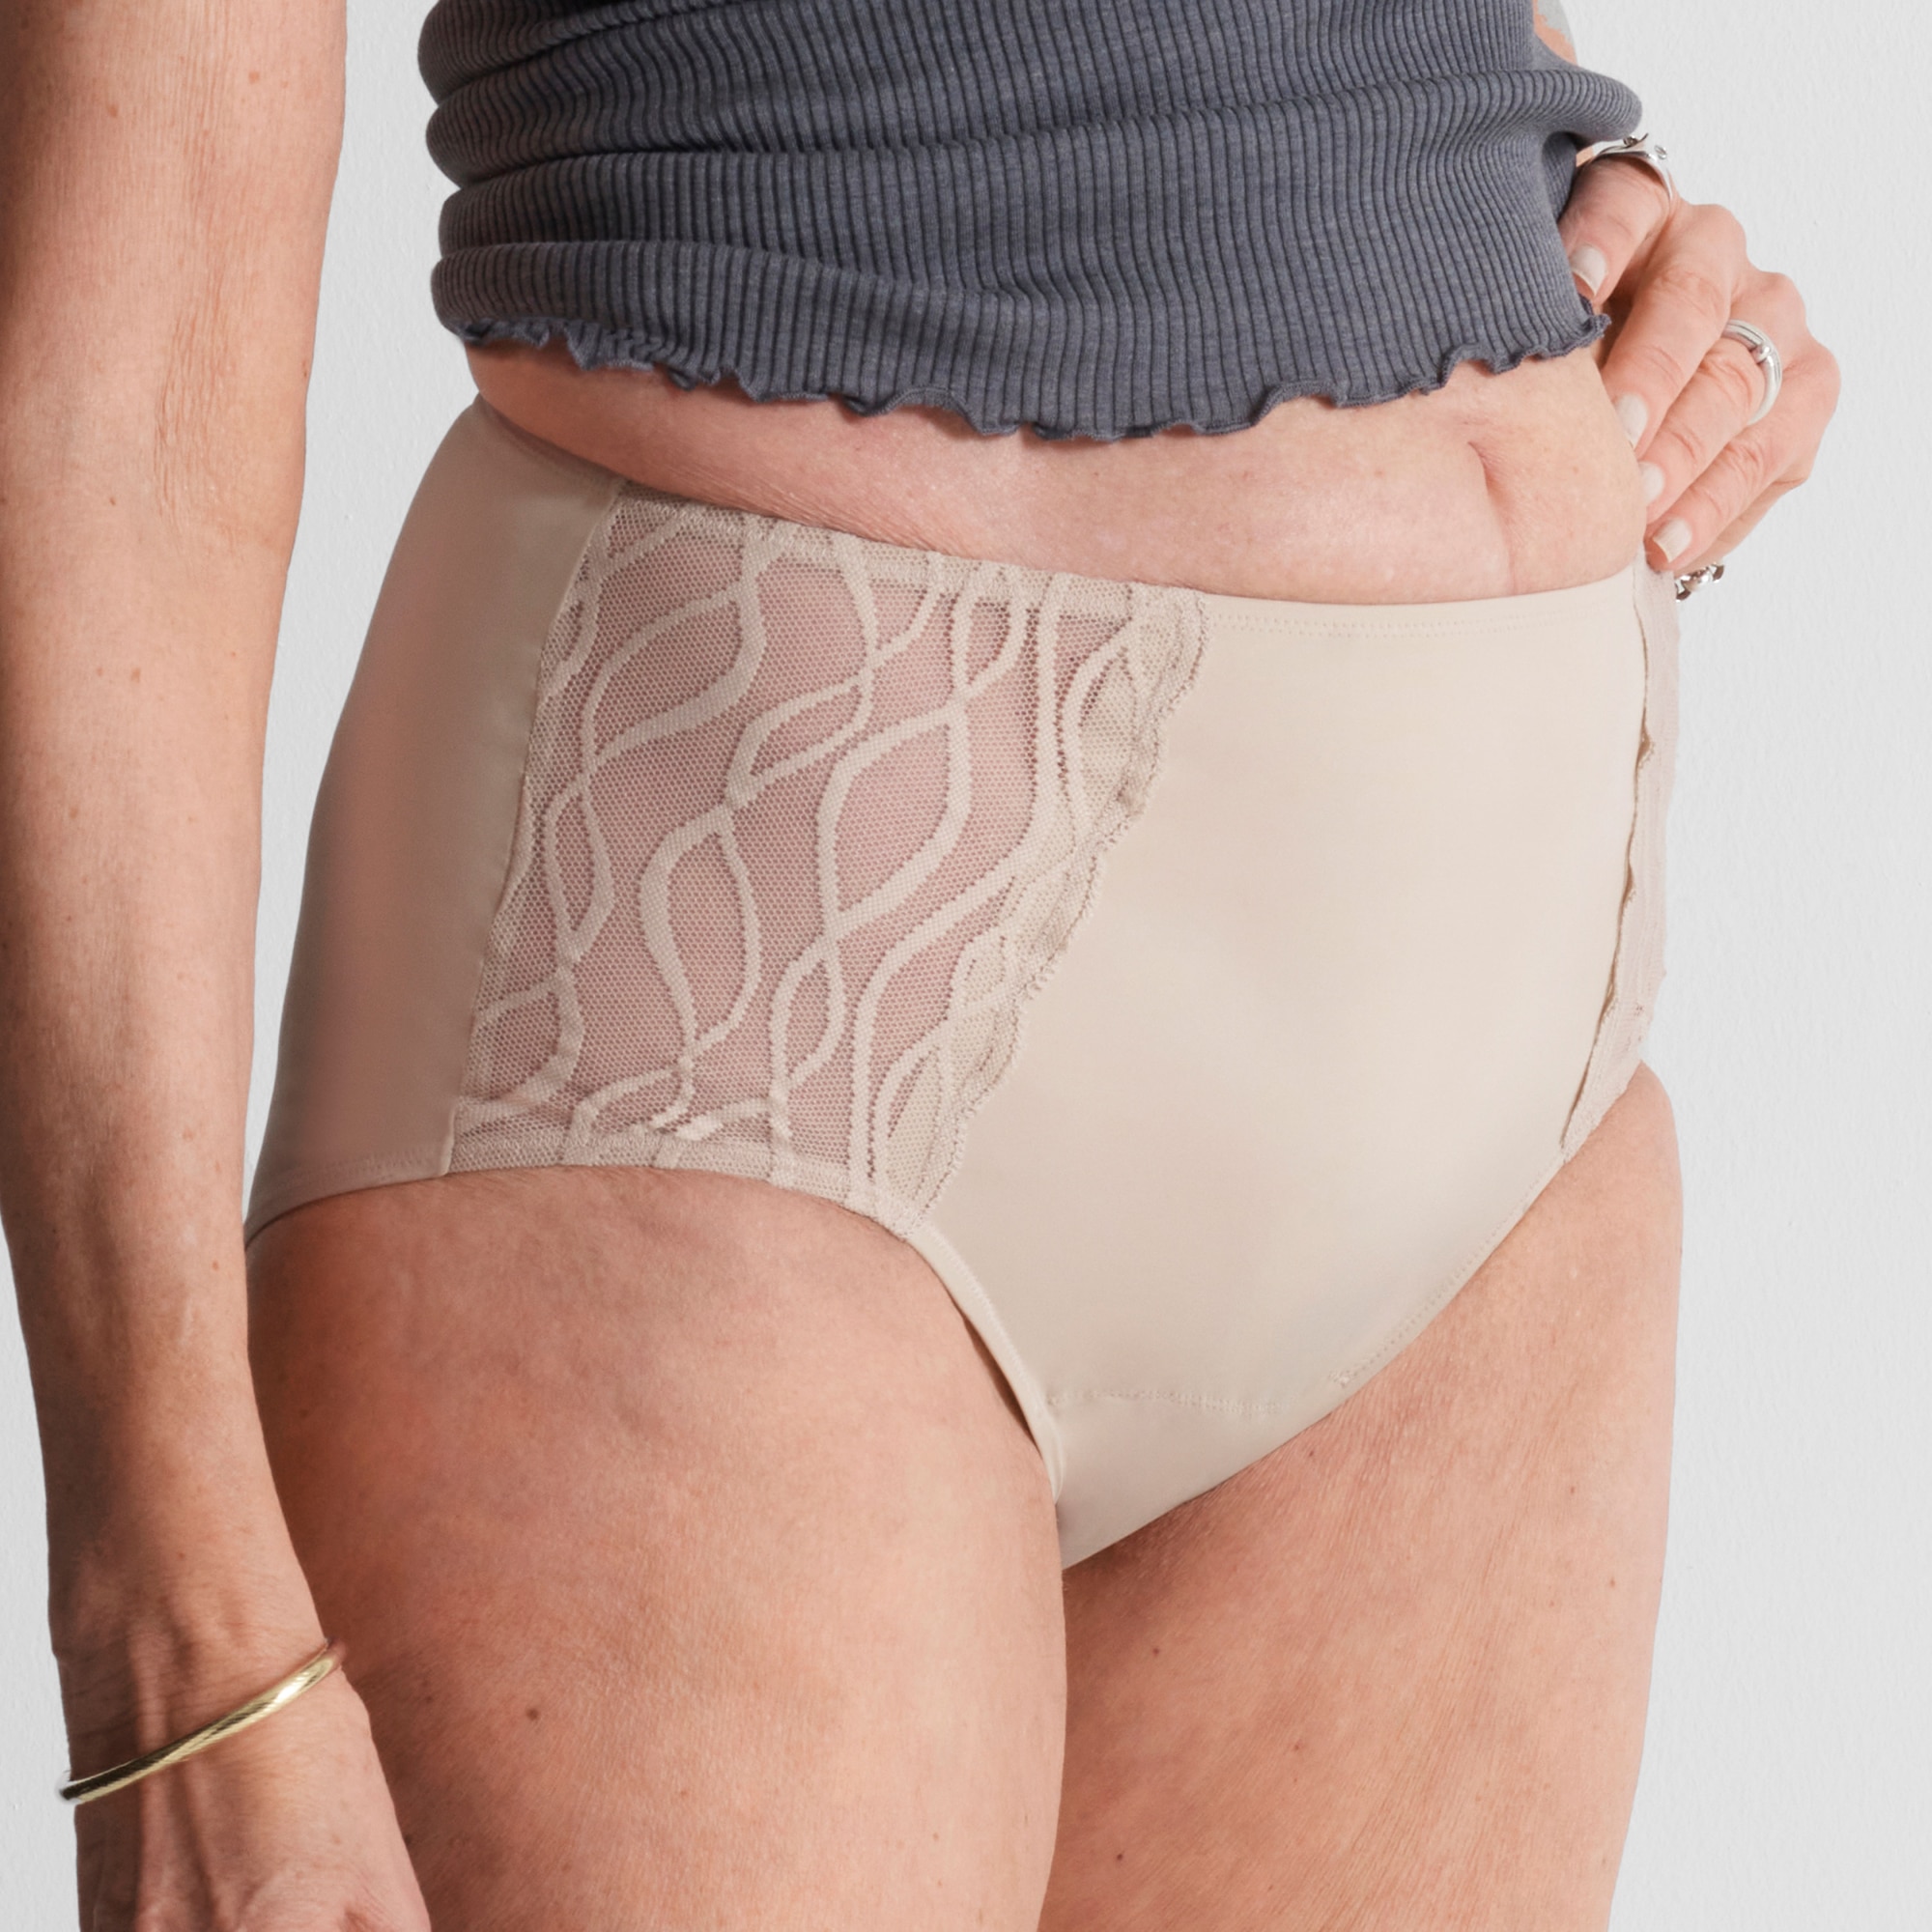 Tena Incontinence Underwear for Women – Geoffs Club